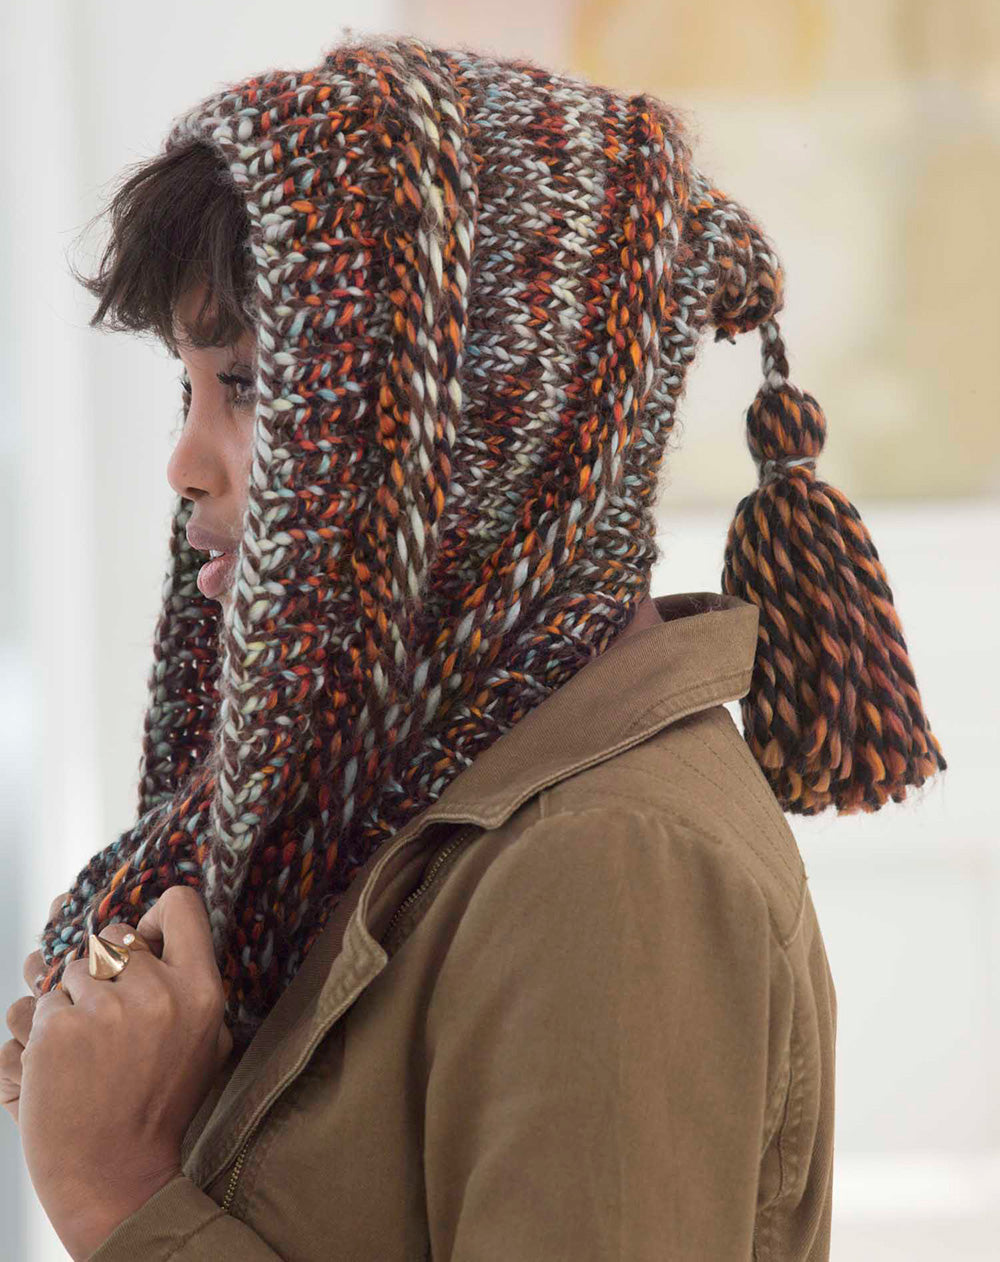 Tasseled Hooded Cowl Pattern (Knit) – Lion Brand Yarn